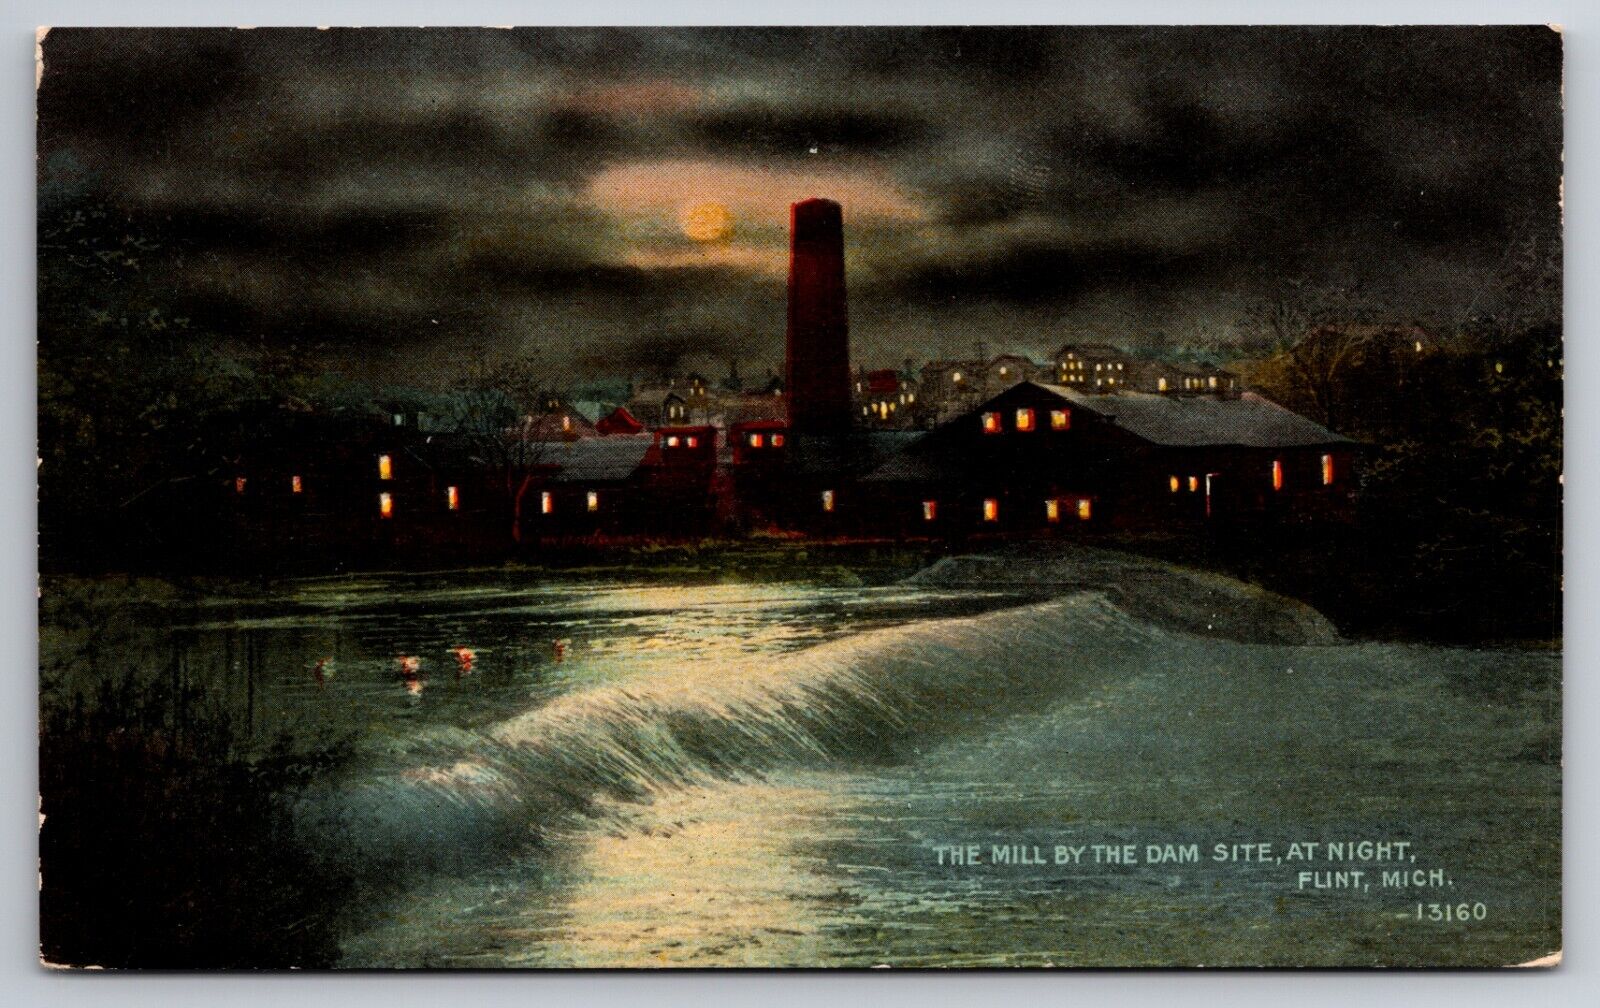 The Mill by the Dam Site at Night Flint Michigan MI c1910 Postcard